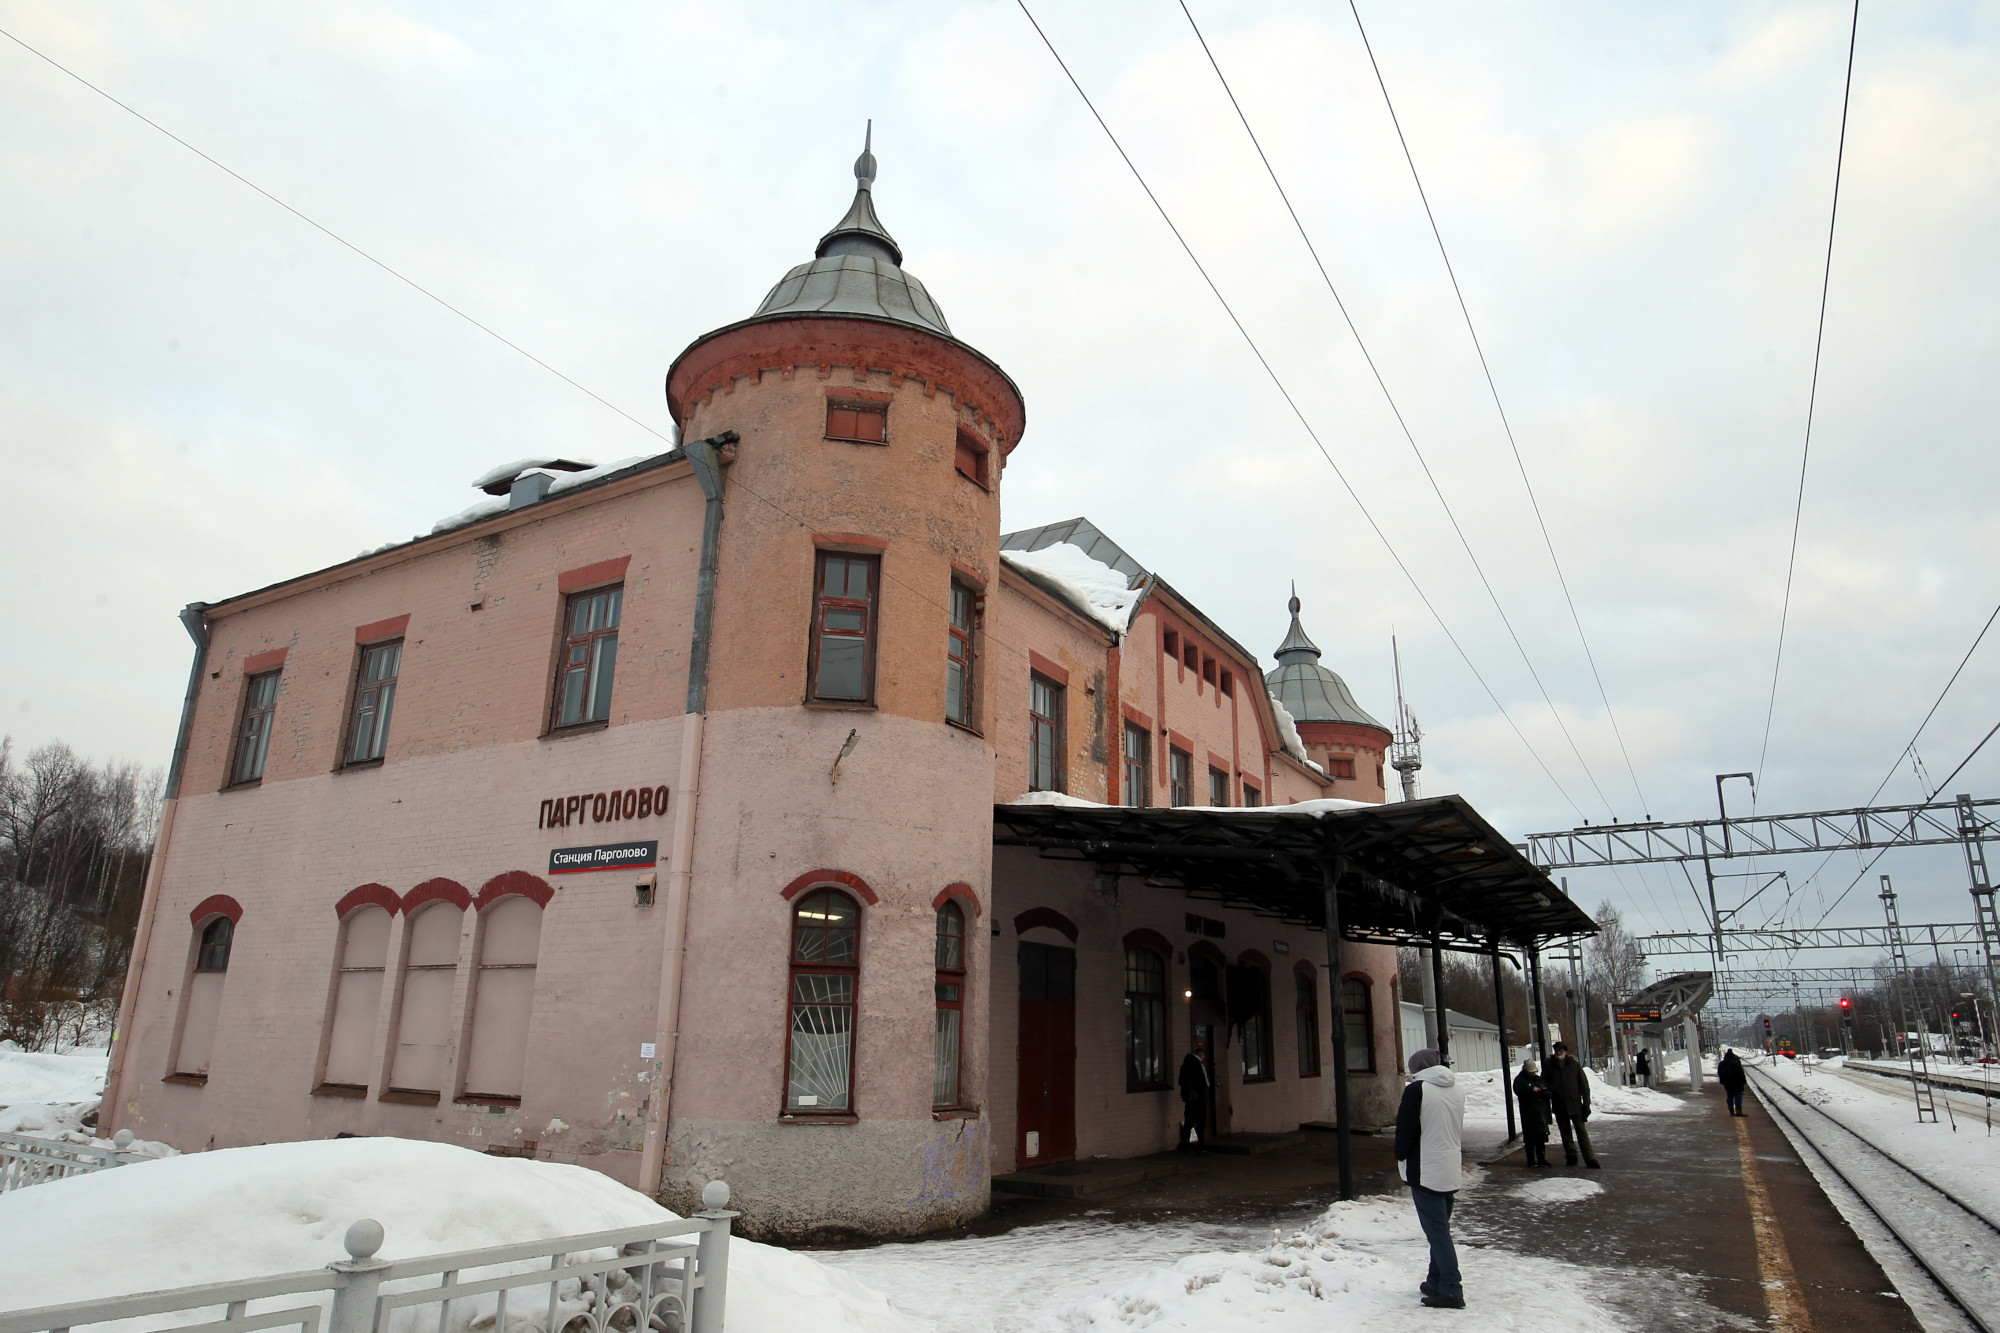 вокзал Парголово, железнодорожная станция Парголово